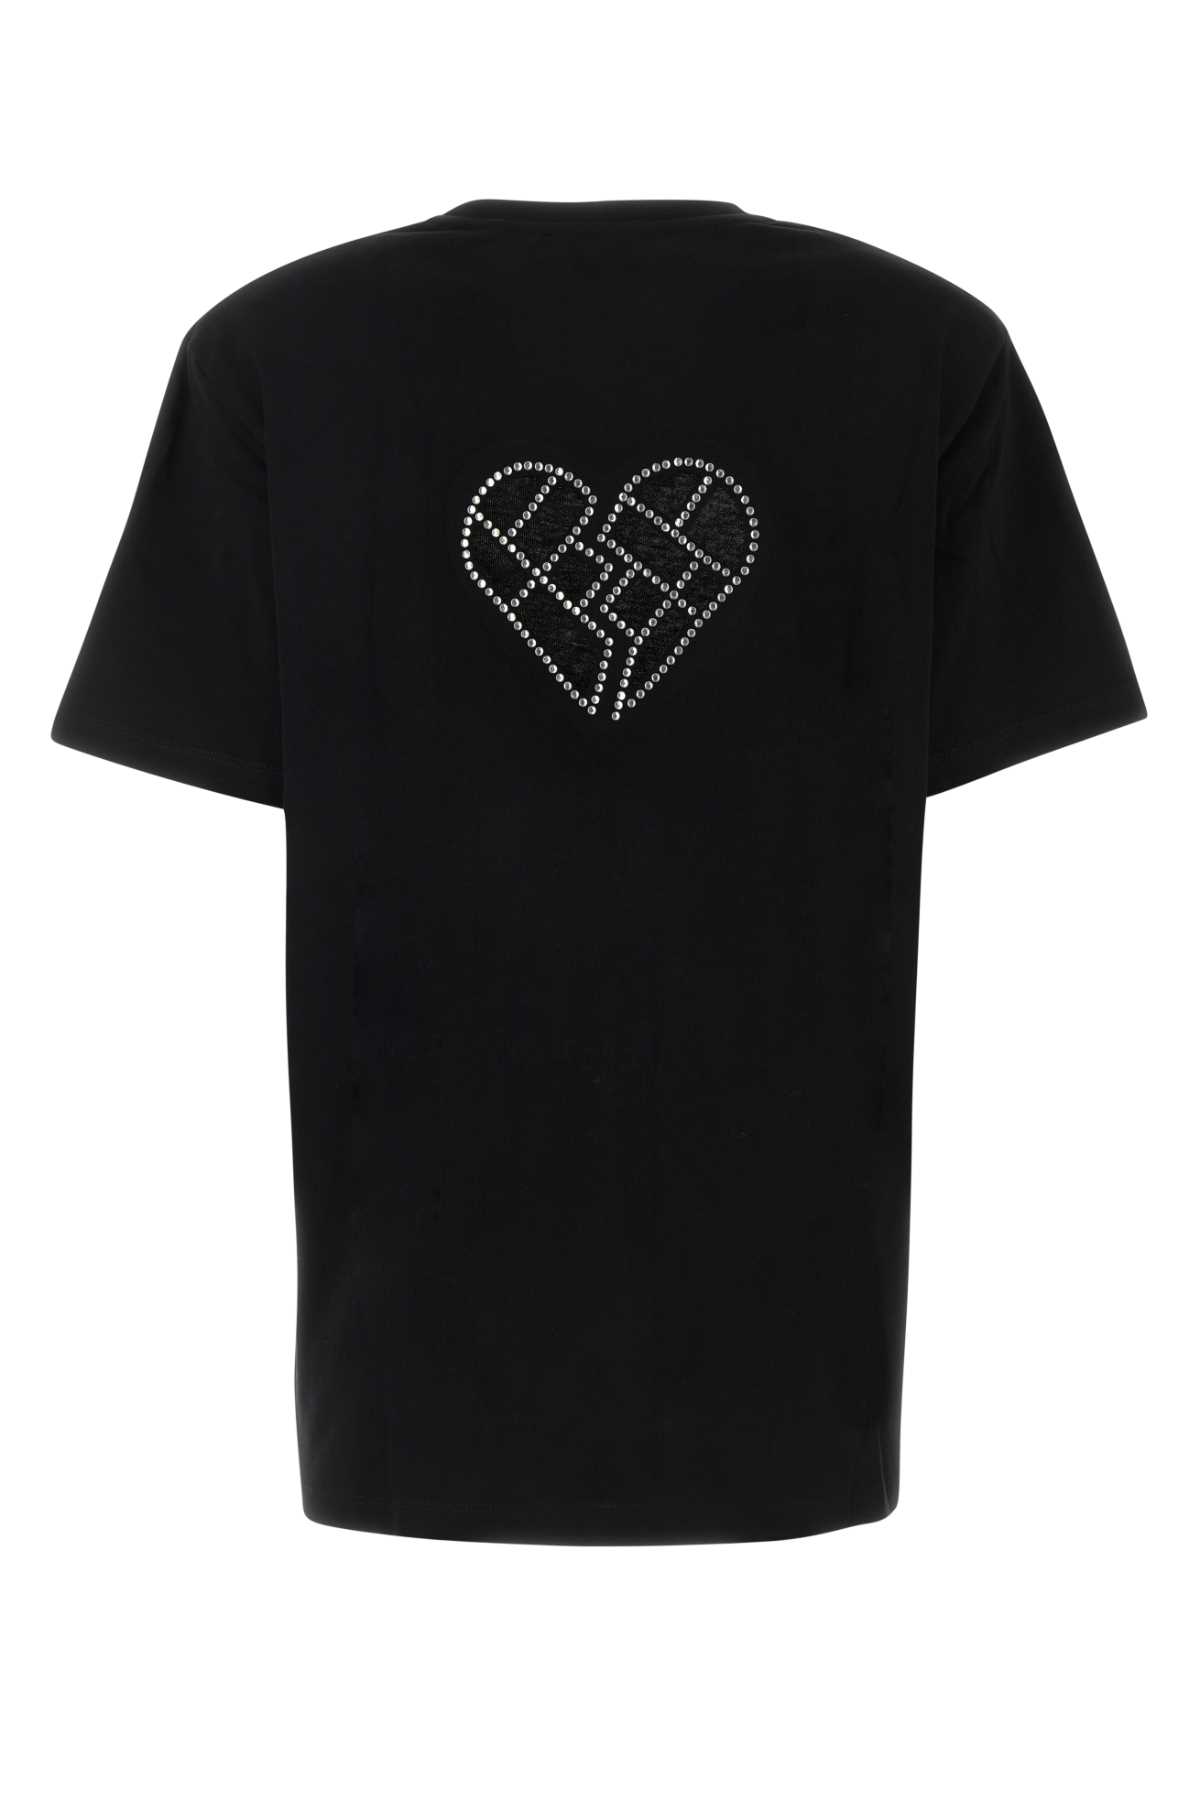 Rotate Birger Christensen Black Cotton Oversize T-shirt